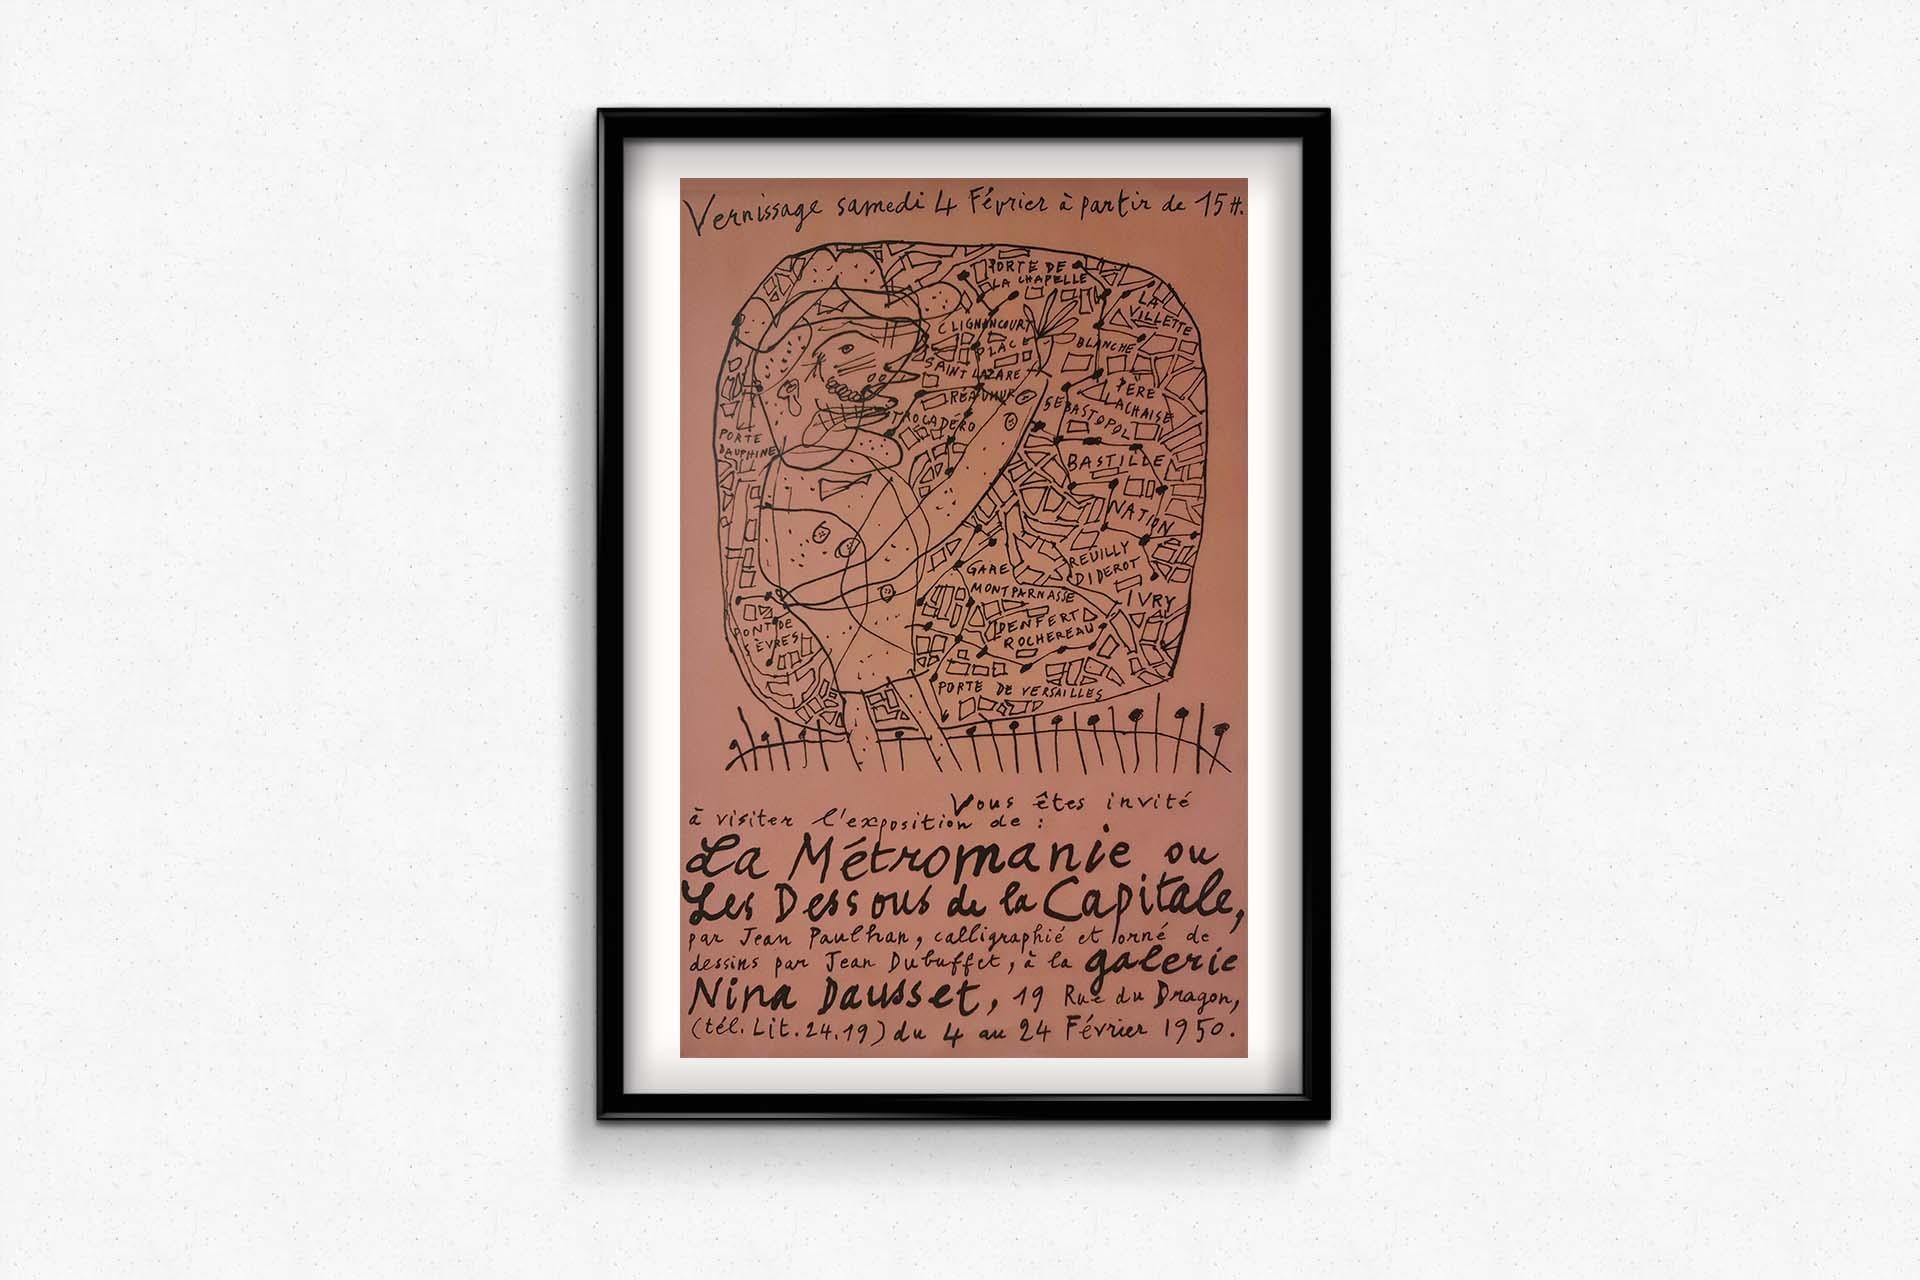 Jean Dubuffet's 1950 exhibition poster La Métromanie - Paris For Sale 3